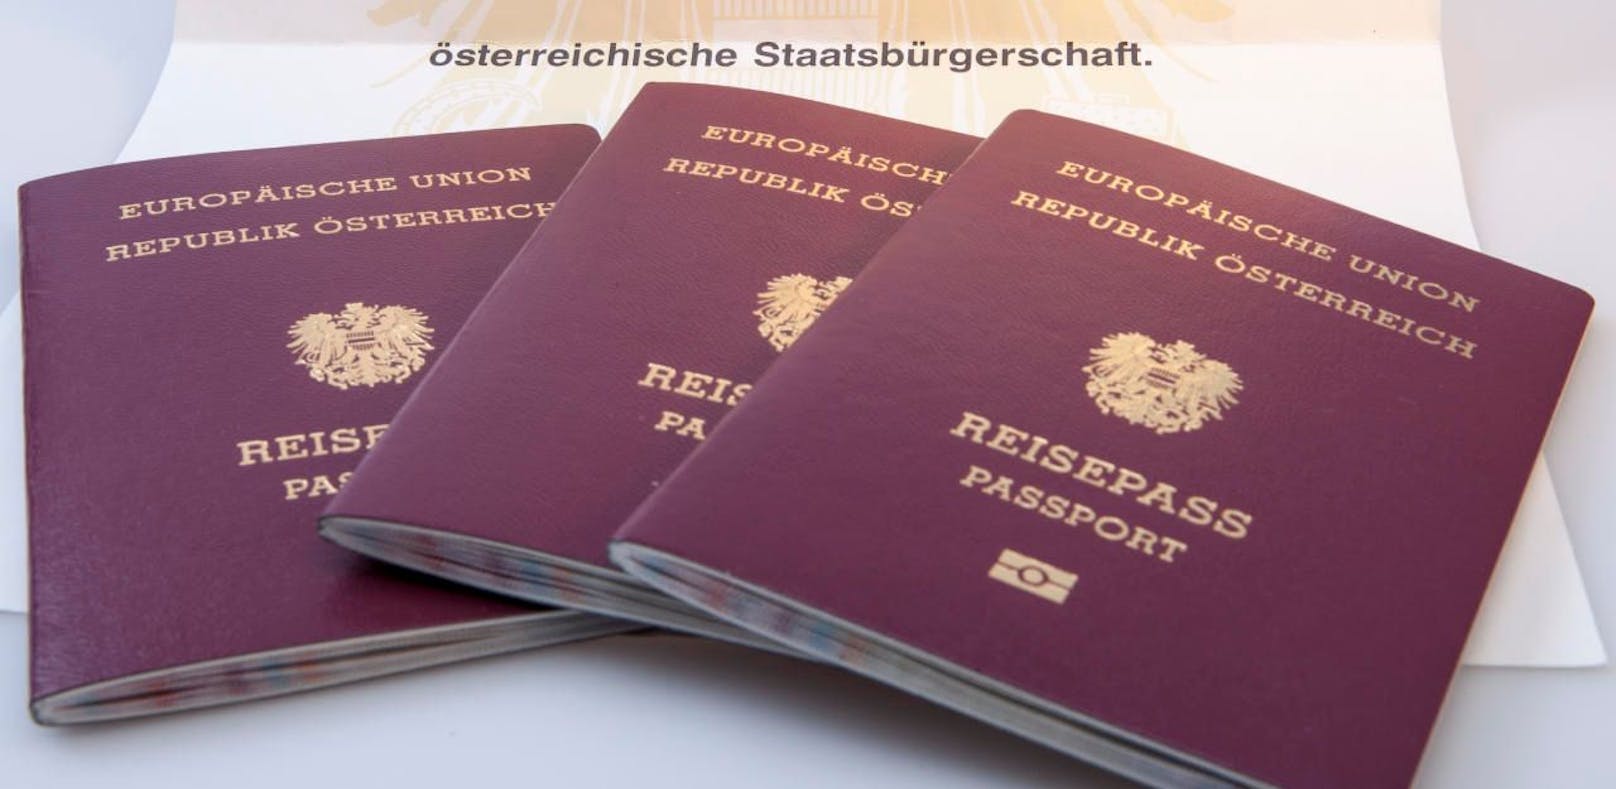 Österreich hinkt beim Thema Einbürgerungen dem Eu-Durchschnitt klar hinterher.
